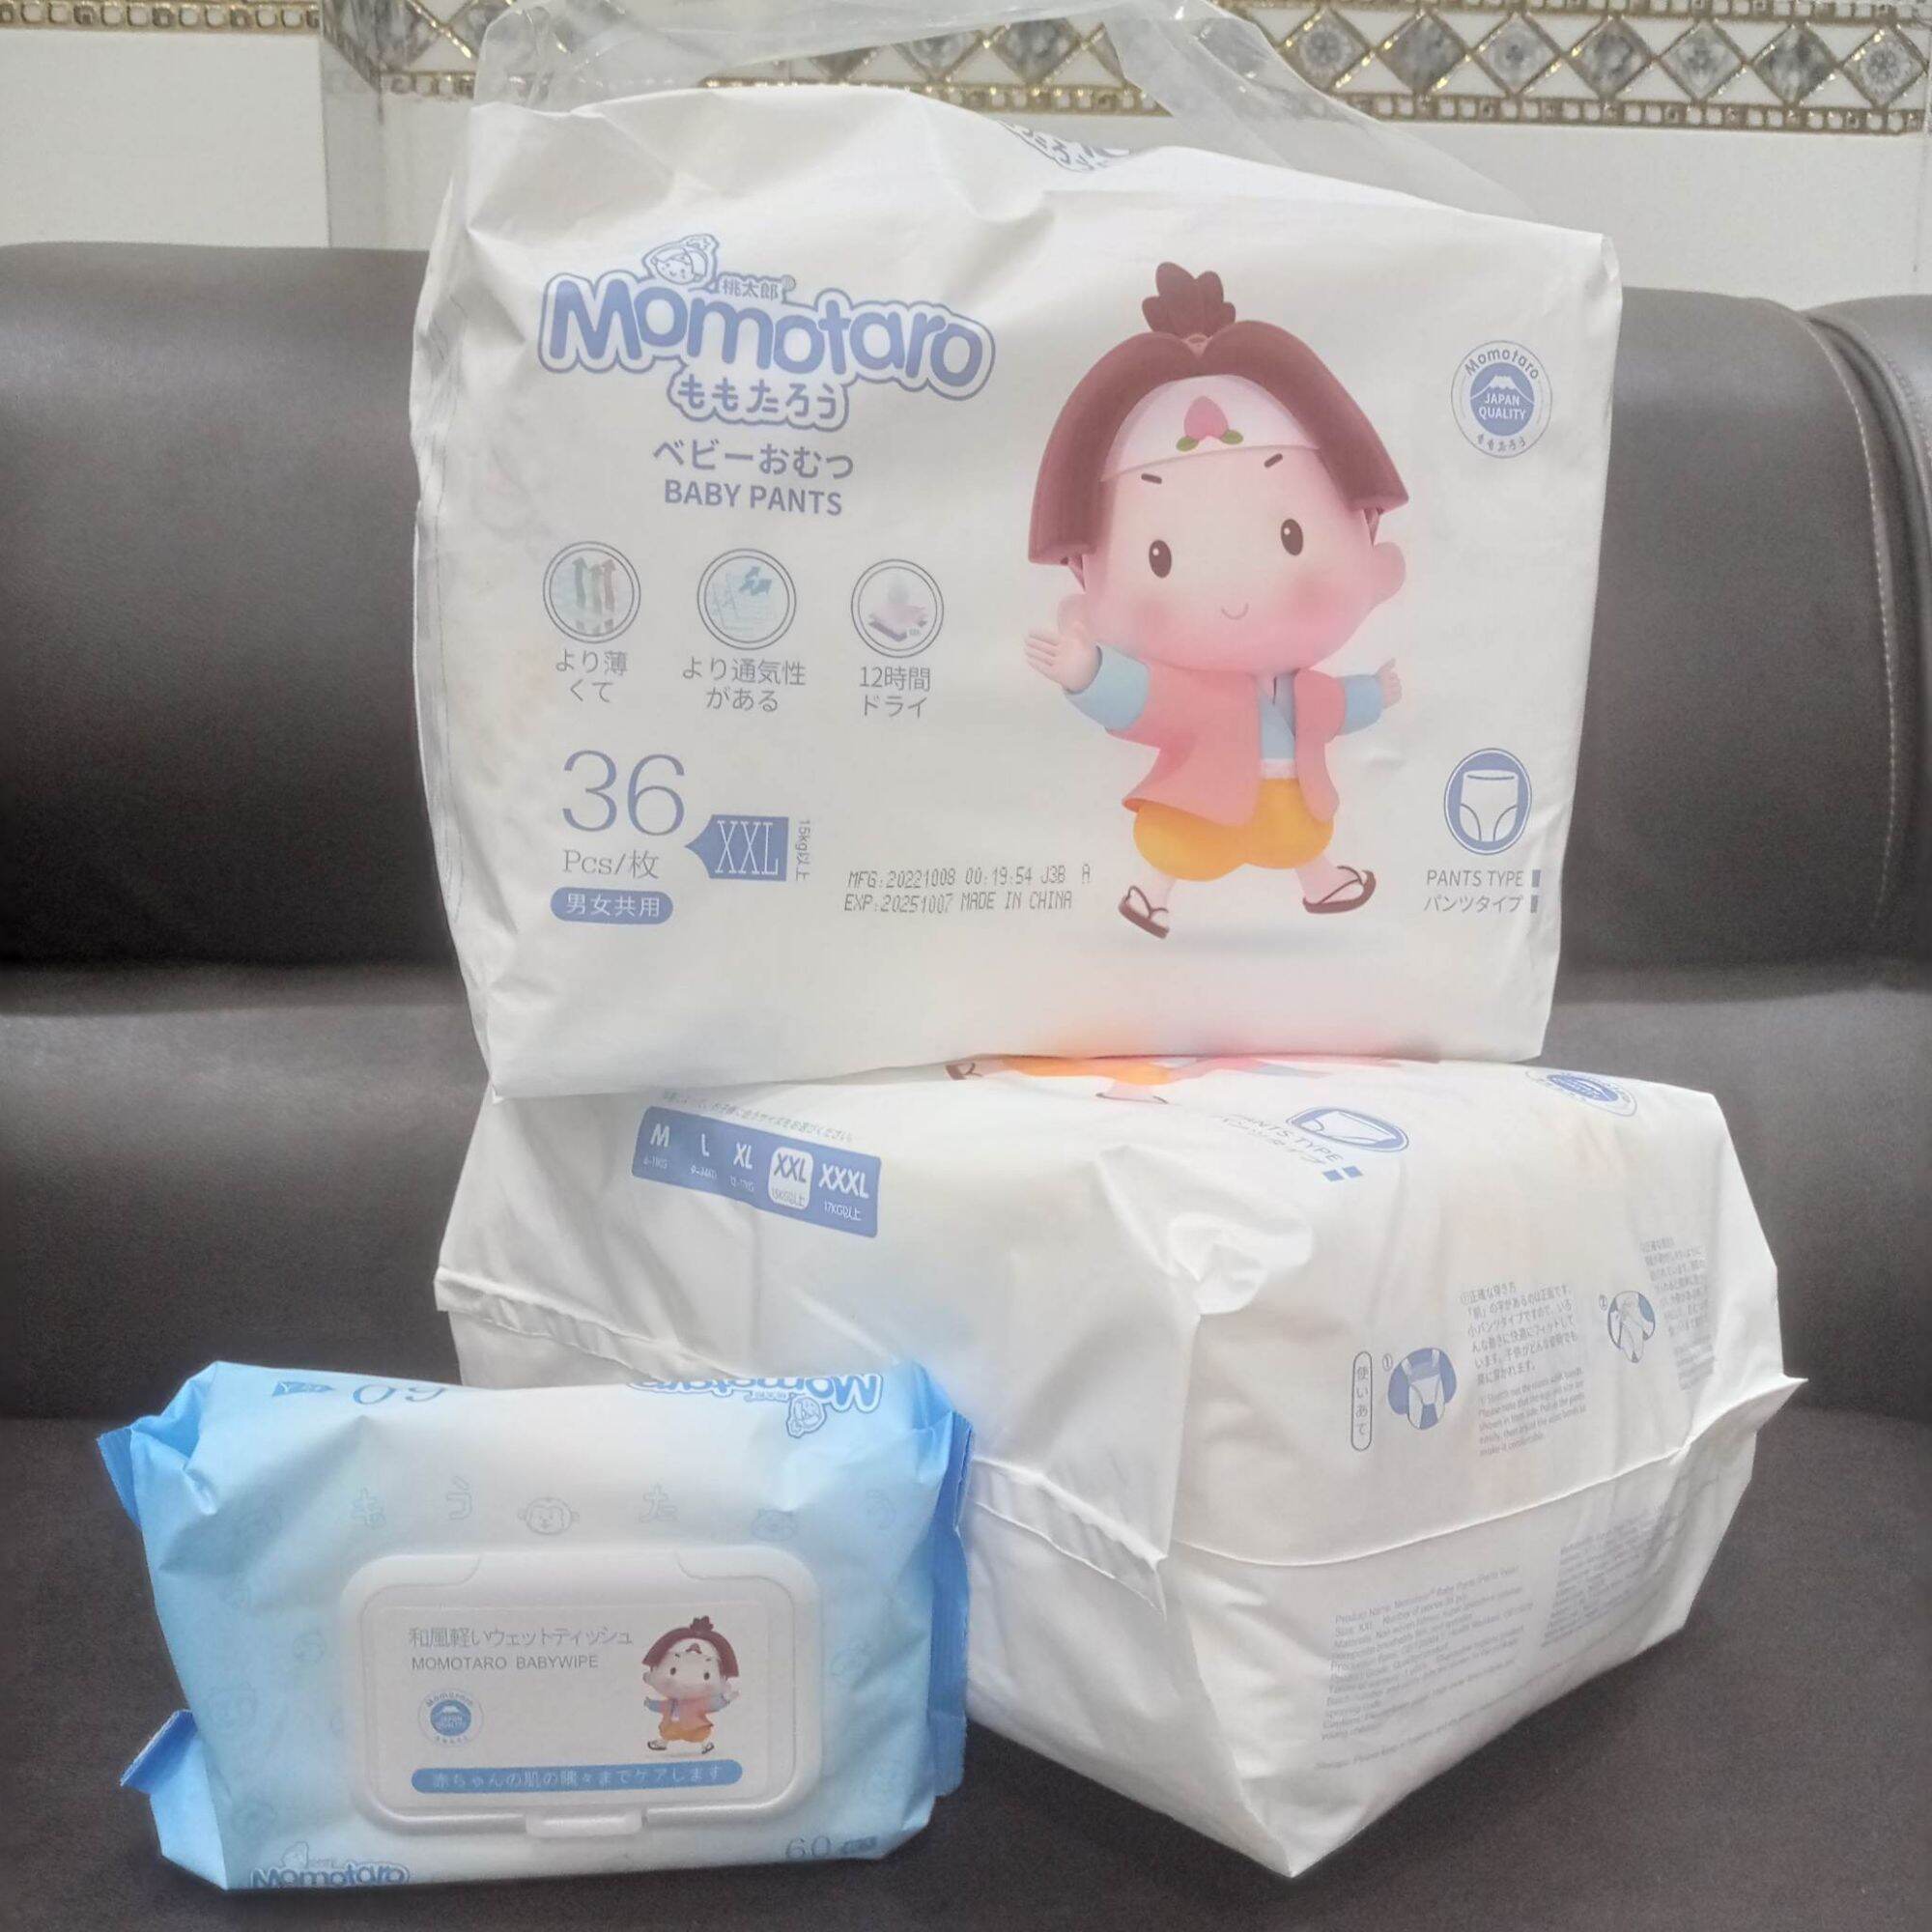 mua 3 tặng 1 balo Bỉm Momotaro Nhật Bản, lựa chọn của mẹ thông thái